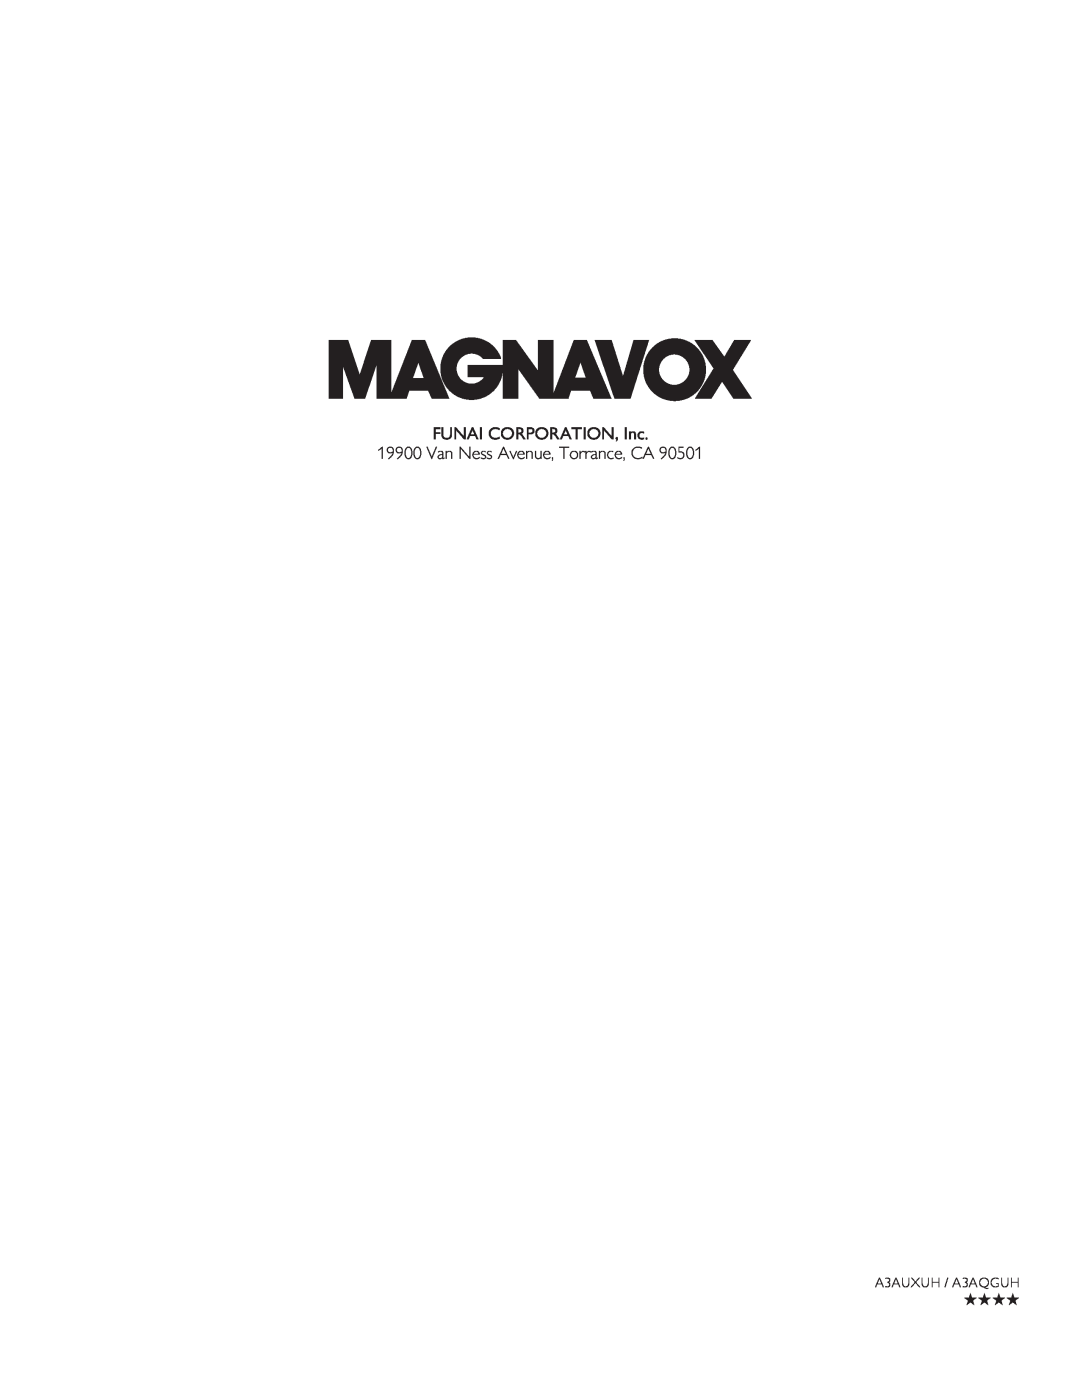 Magnavox 50ME313V/F7 A, 46ME313V/F7 A FUNAI CORPORATION, Inc 19900 Van Ness Avenue, Torrance, CA, A3AUXUH / A3AQGUH 